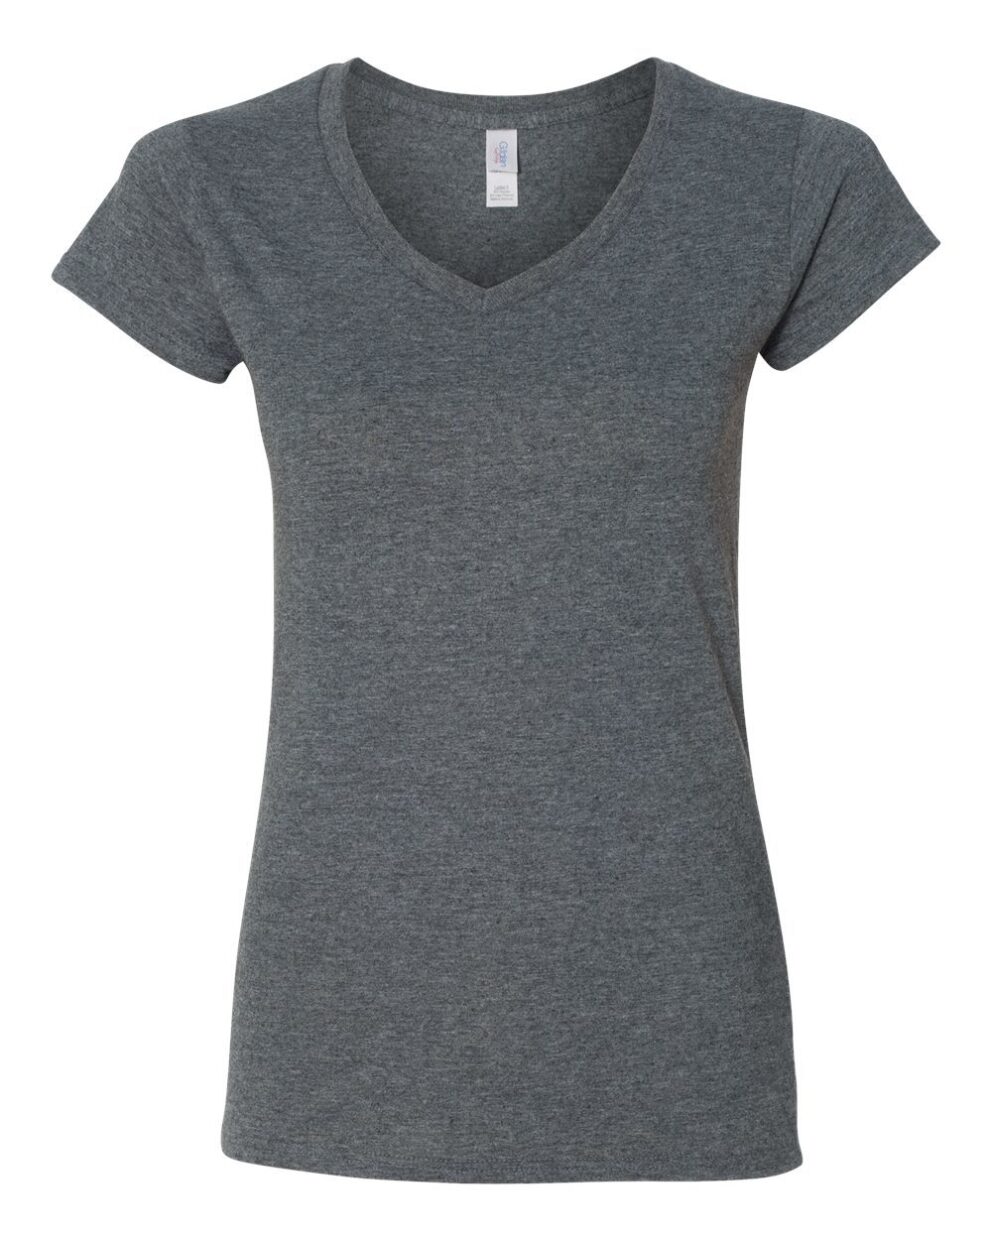 Ladies V-neck Dark Heather Grey Cotton T-shirt